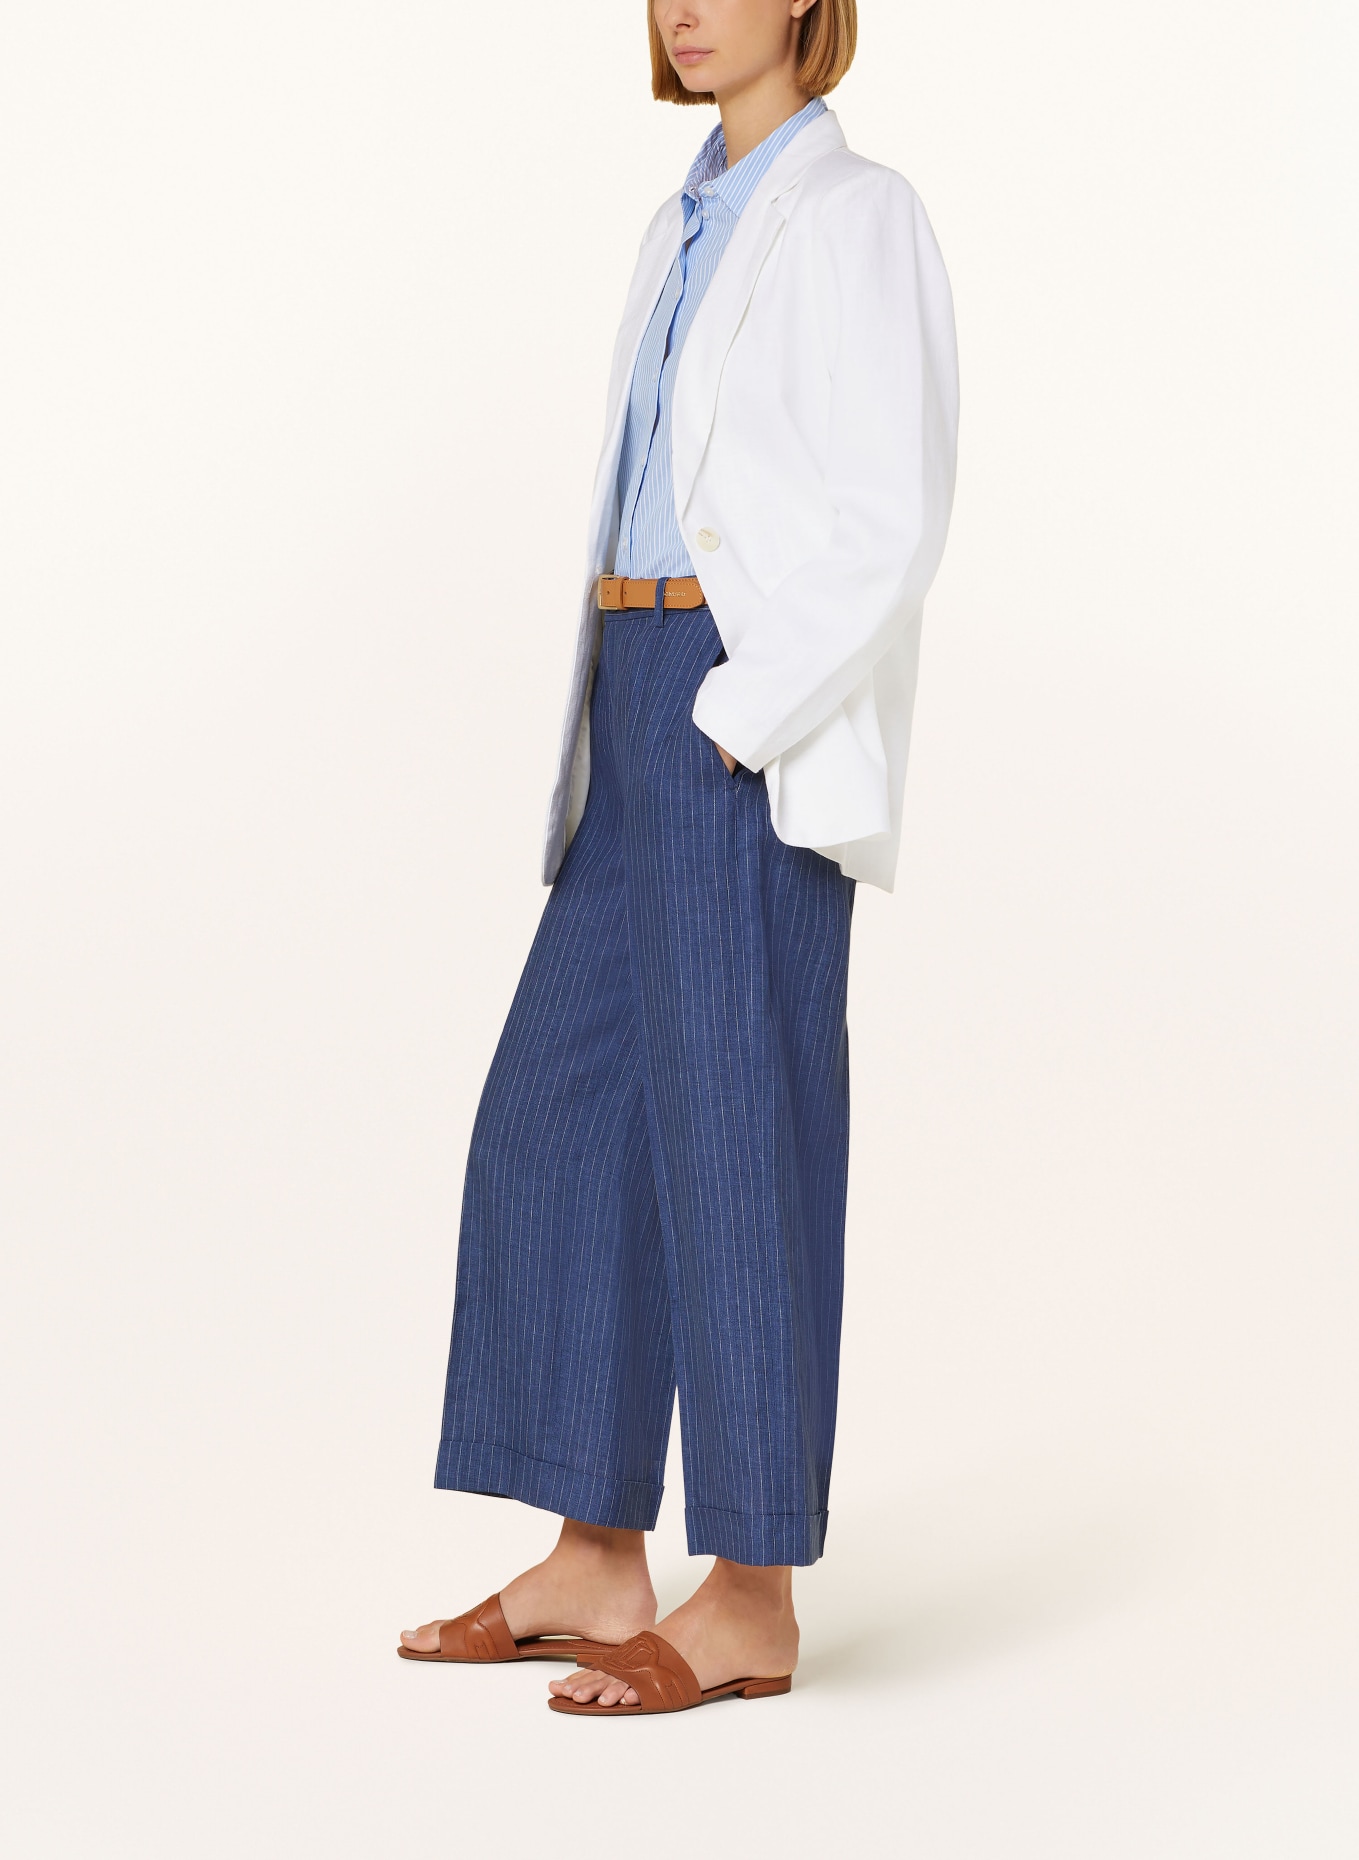 LAUREN RALPH LAUREN Linen culottes in denim look, Color: DARK BLUE/ WHITE (Image 4)